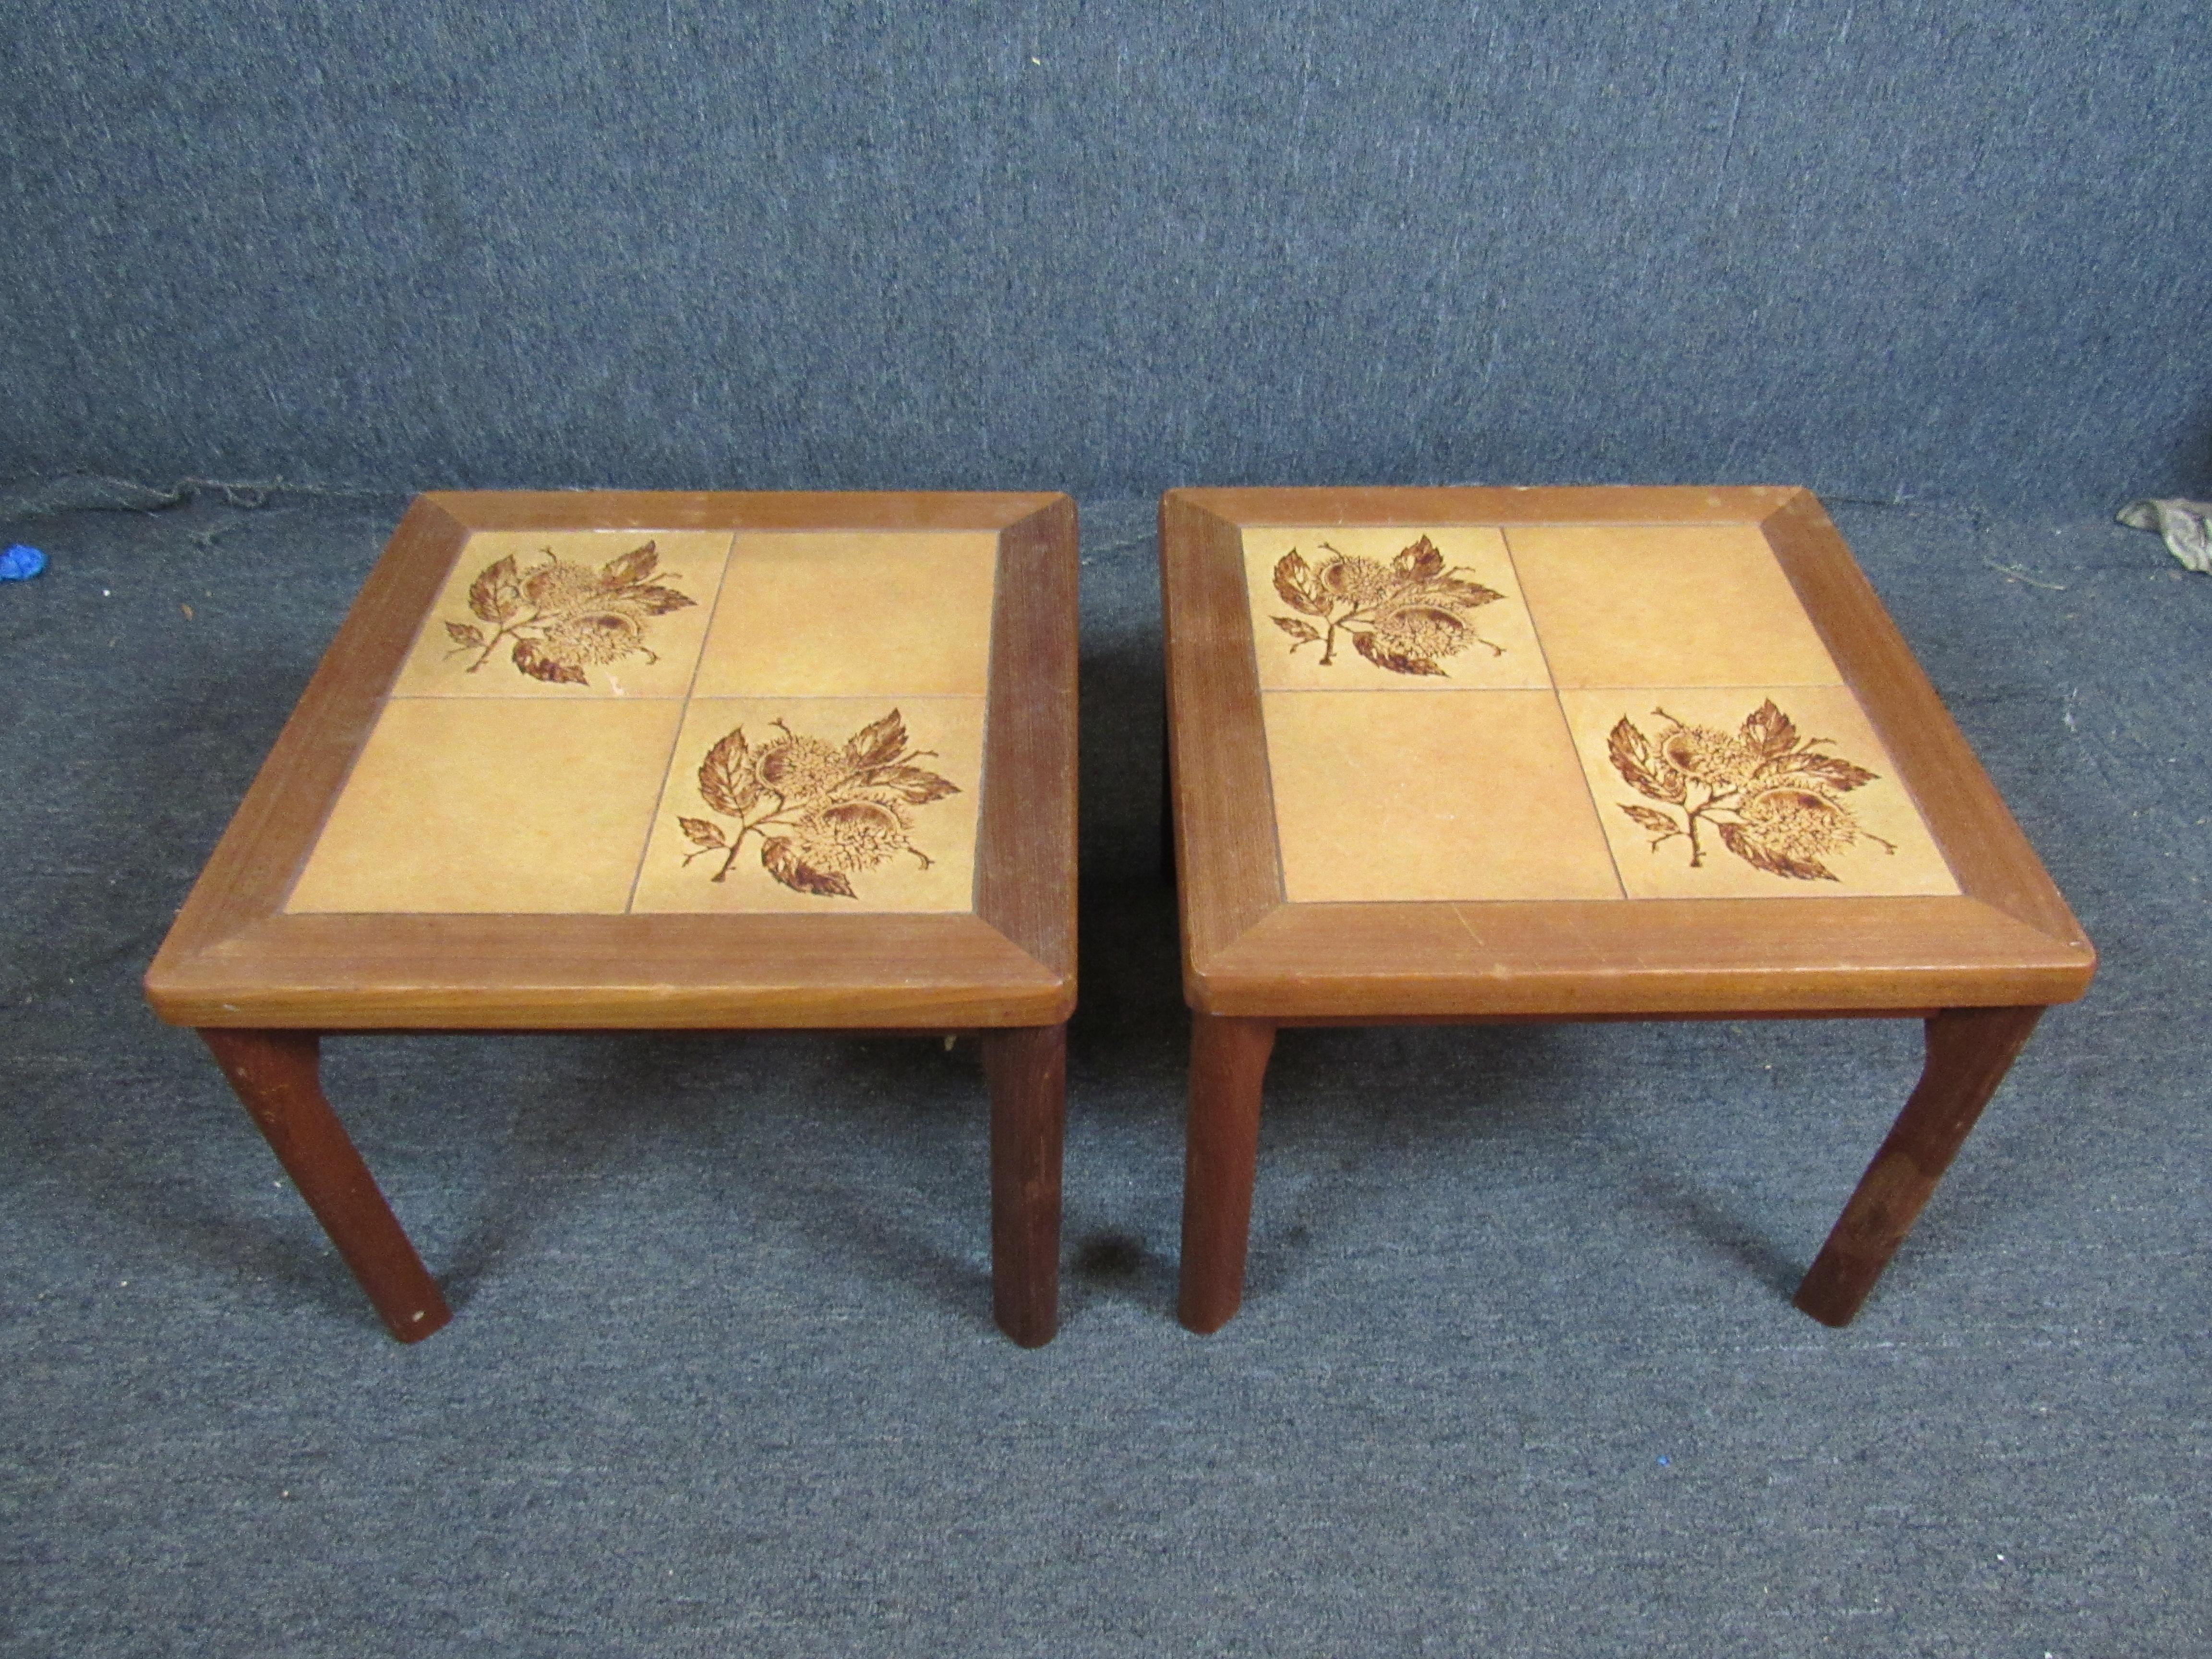 Charming little pair of unique tiled side tables with a vintage floral motif. A convenient 20x20